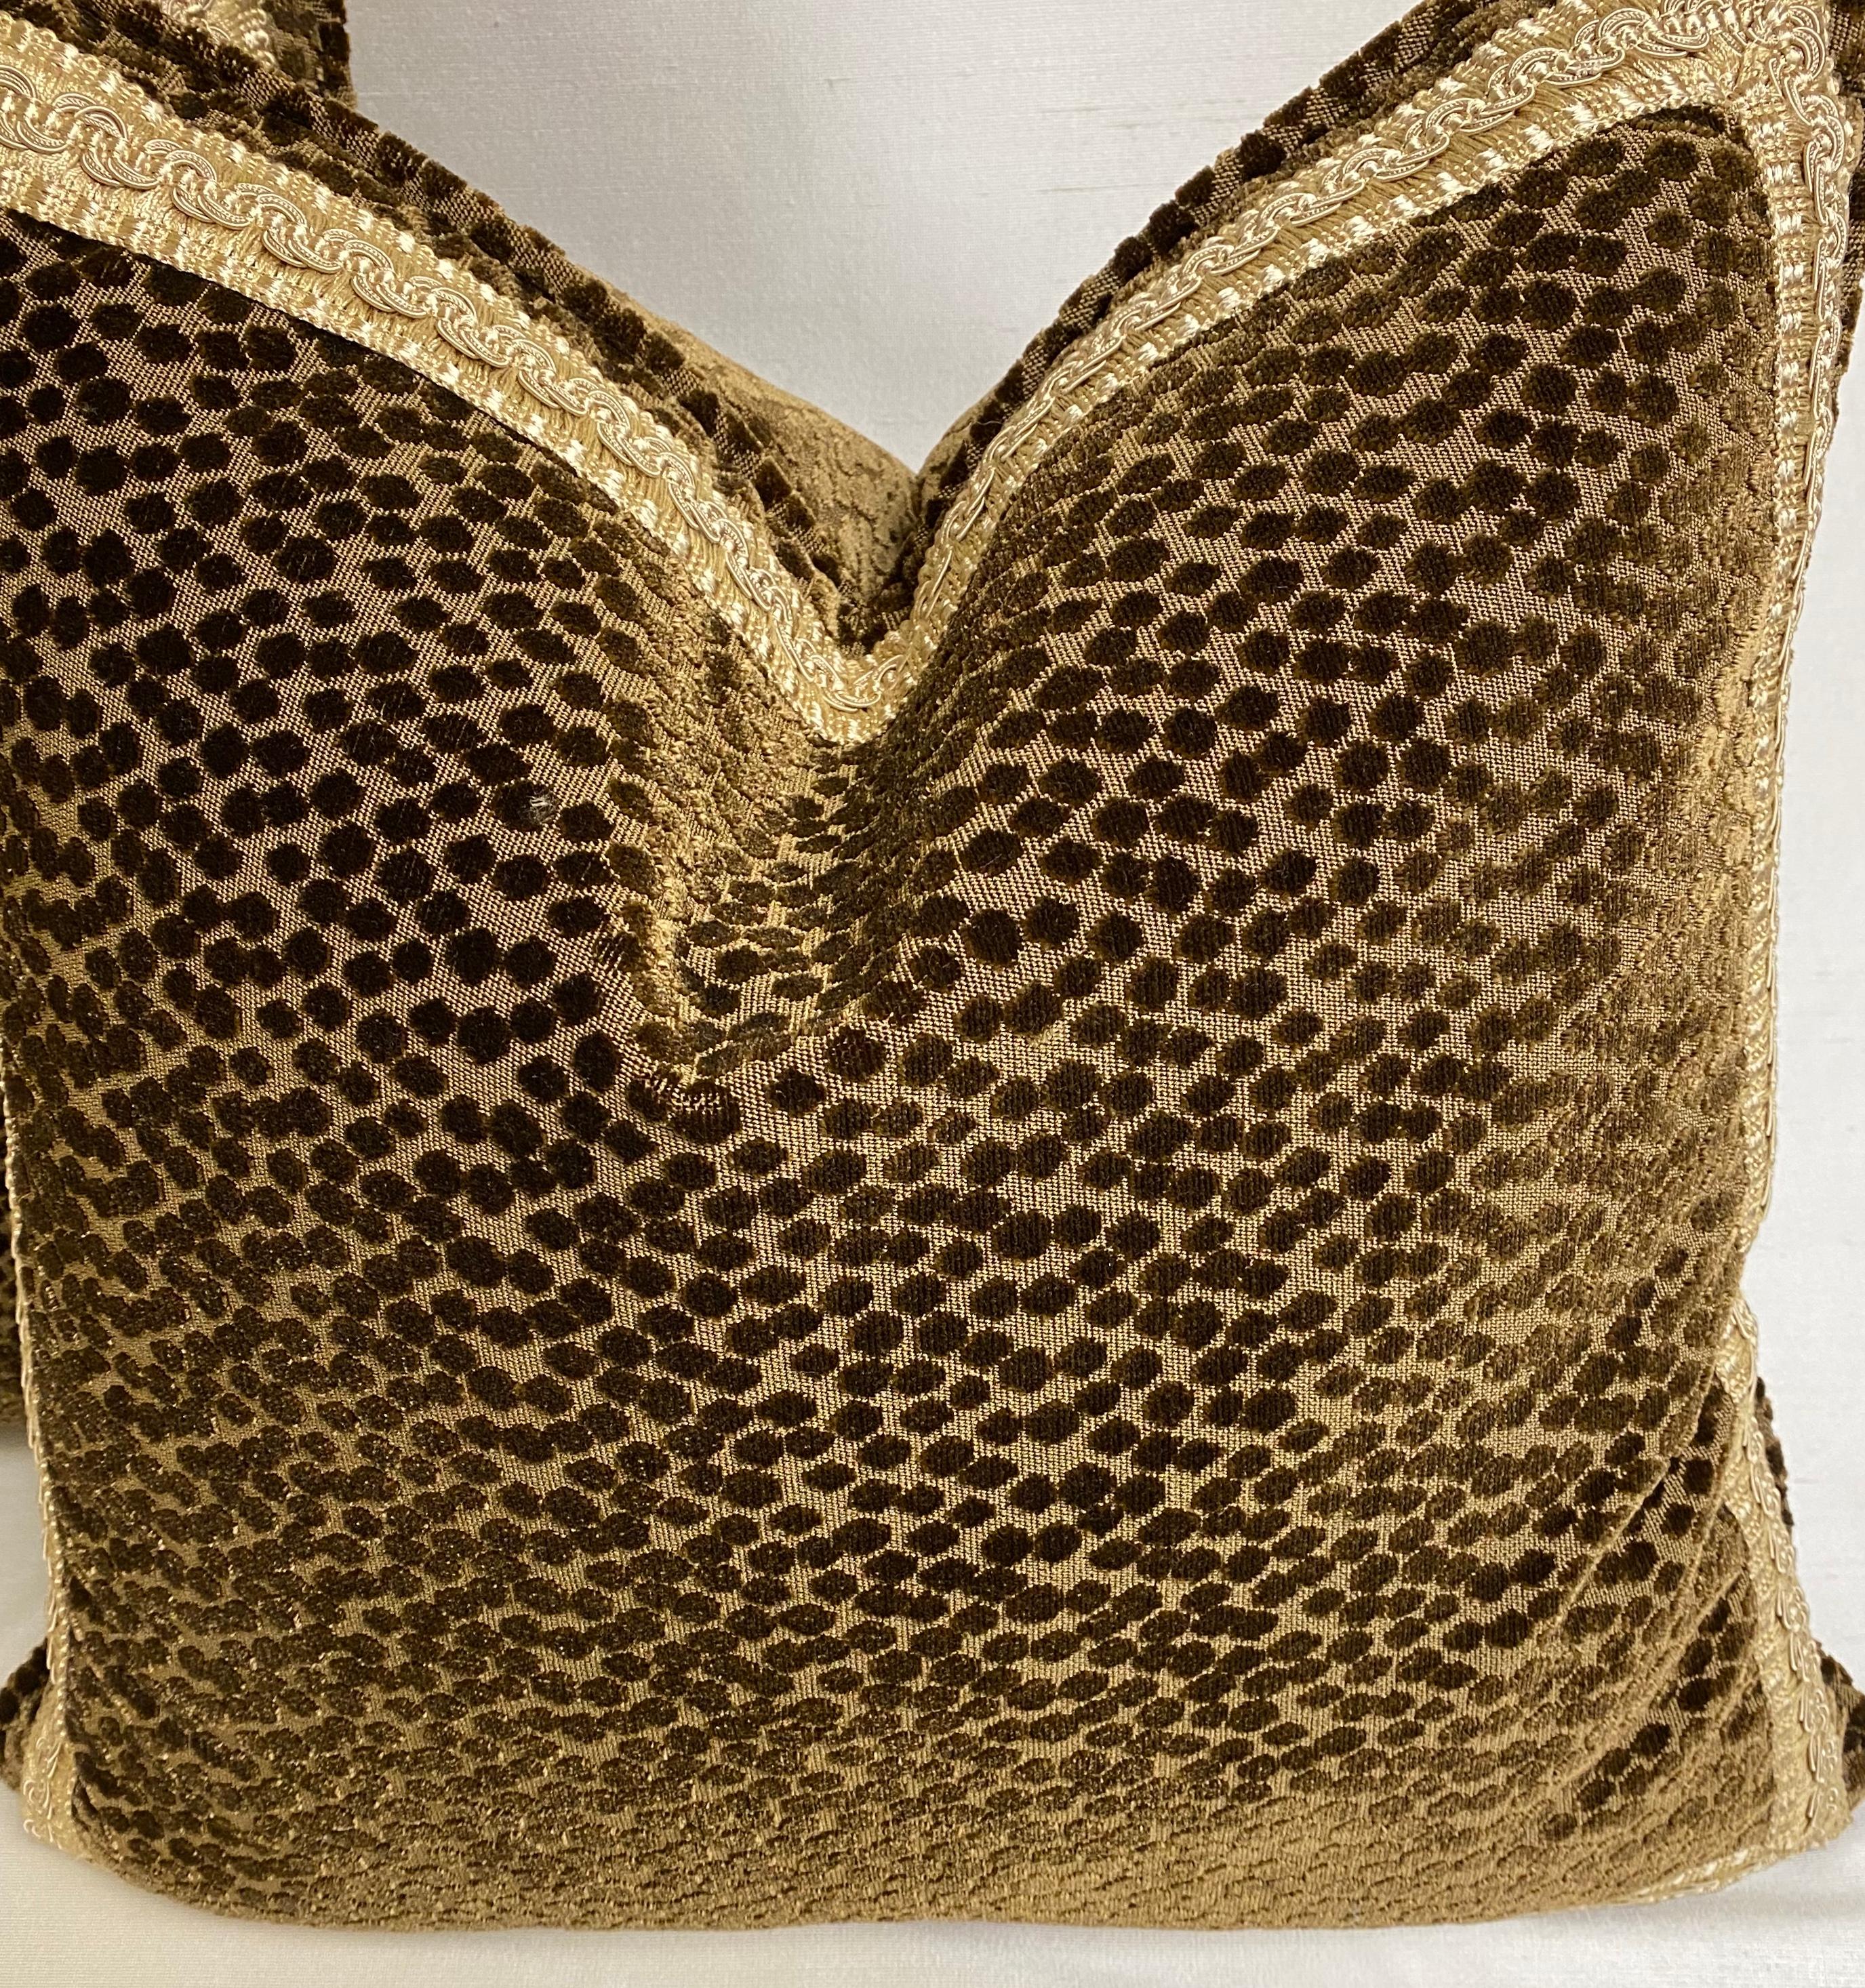 Paire de coussins décoratifs en velours coupé brun foncé, remplis de duvet, avec garniture en tresse dorée.
Tissu des deux côtés.
22 pouces carrés.